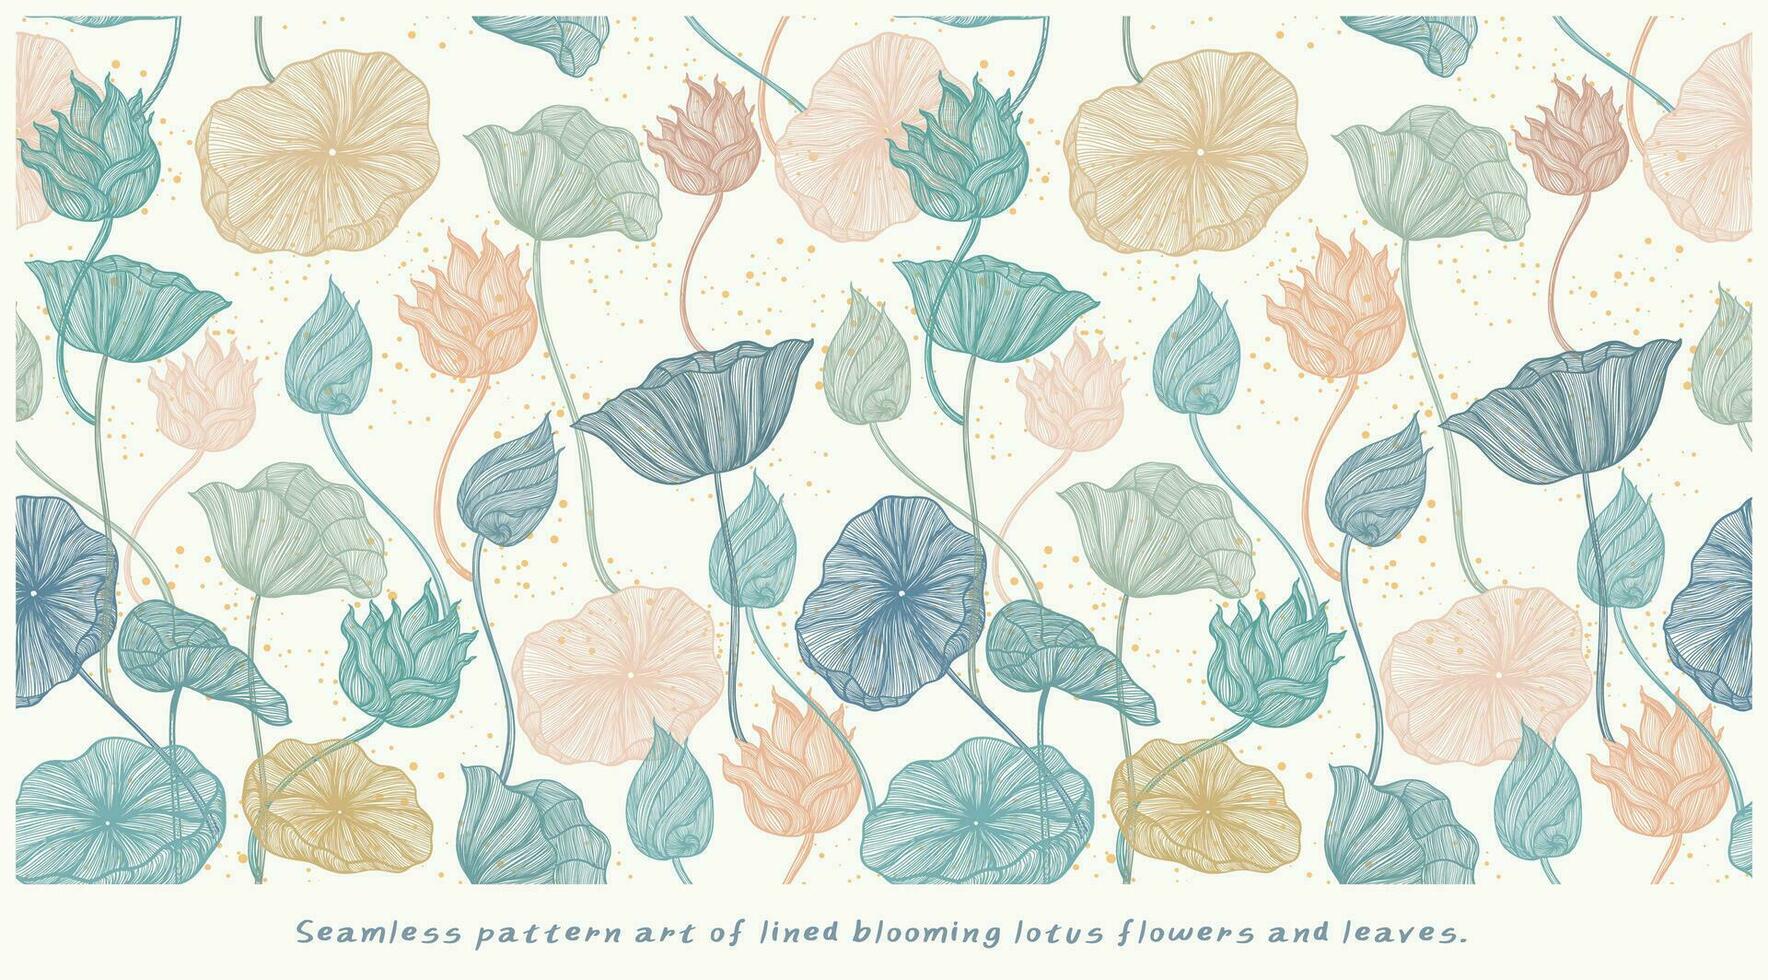 sömlös mönster konst av fodrad blomning lotus blommor och löv vektor